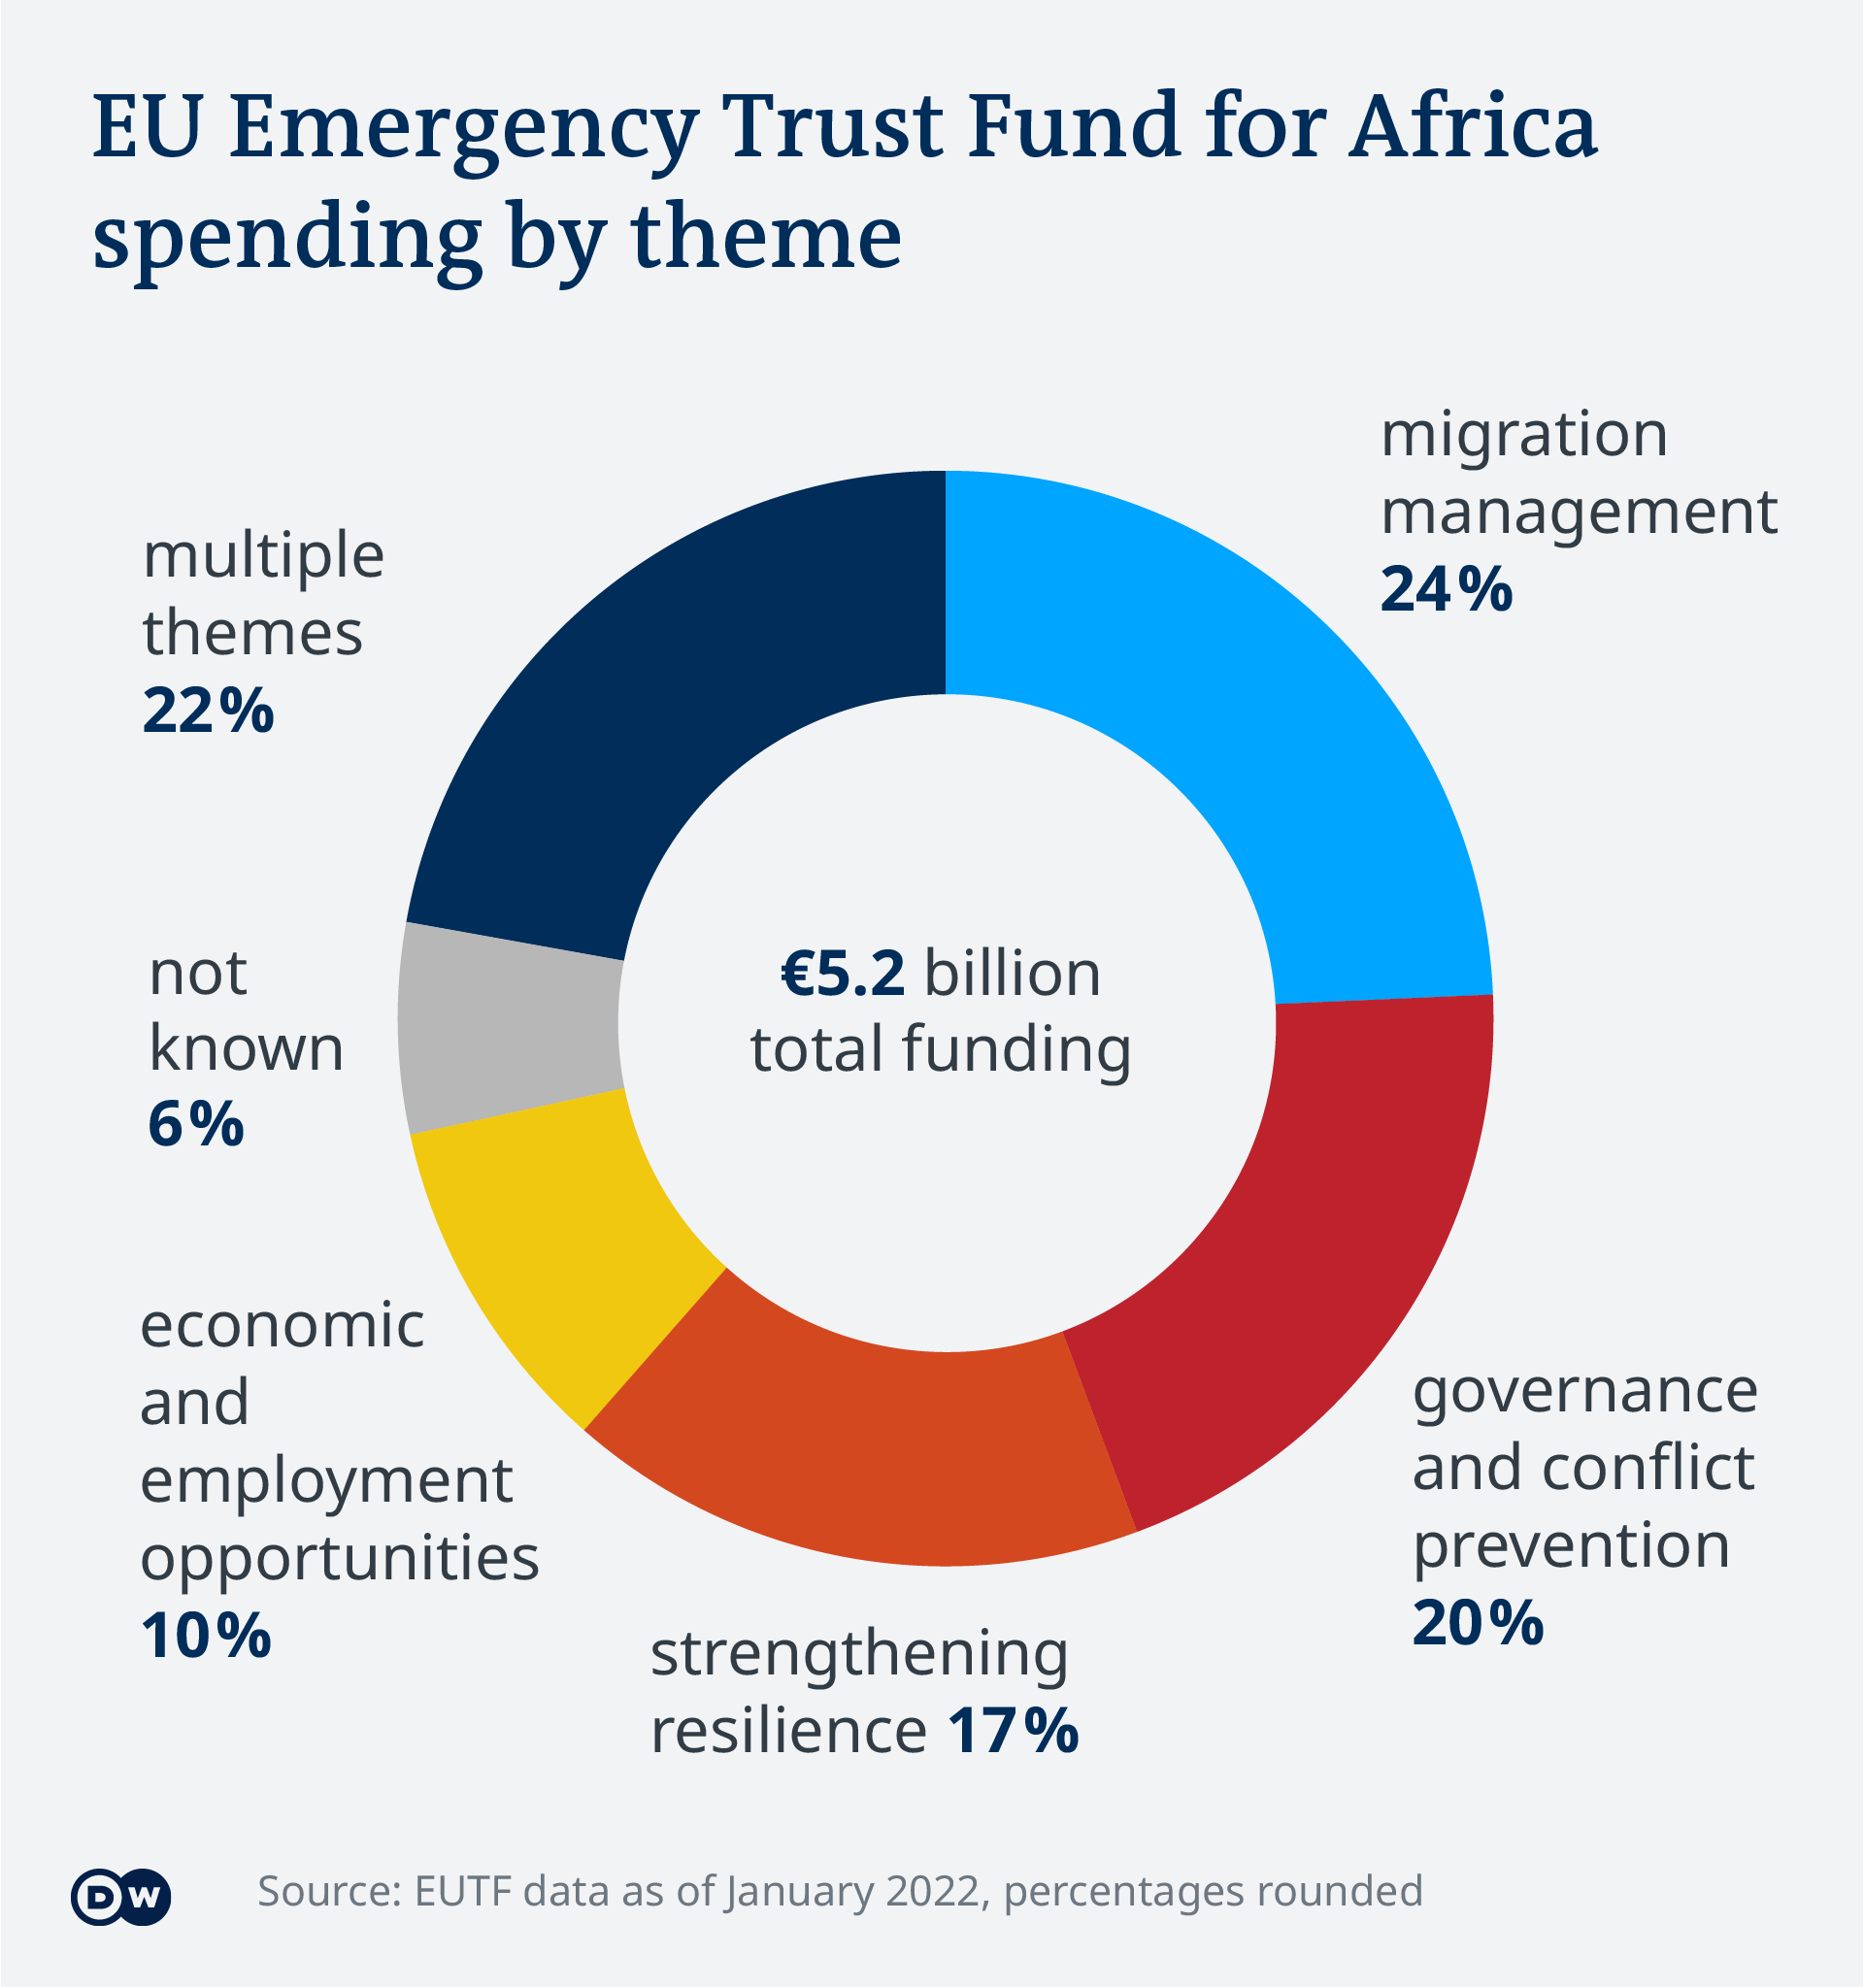 Visualisation des données : 24 % des fonds sont allés à la gestion des migrations, 20 % à la gouvernance et à la prévention des conflits, 17 % au renforcement de la résilience, 10 % aux opportunités économiques et d'emploi, 6 % ne sont pas assignés à un thème et 22 % des fonds ont plusieurs thèmes assignés